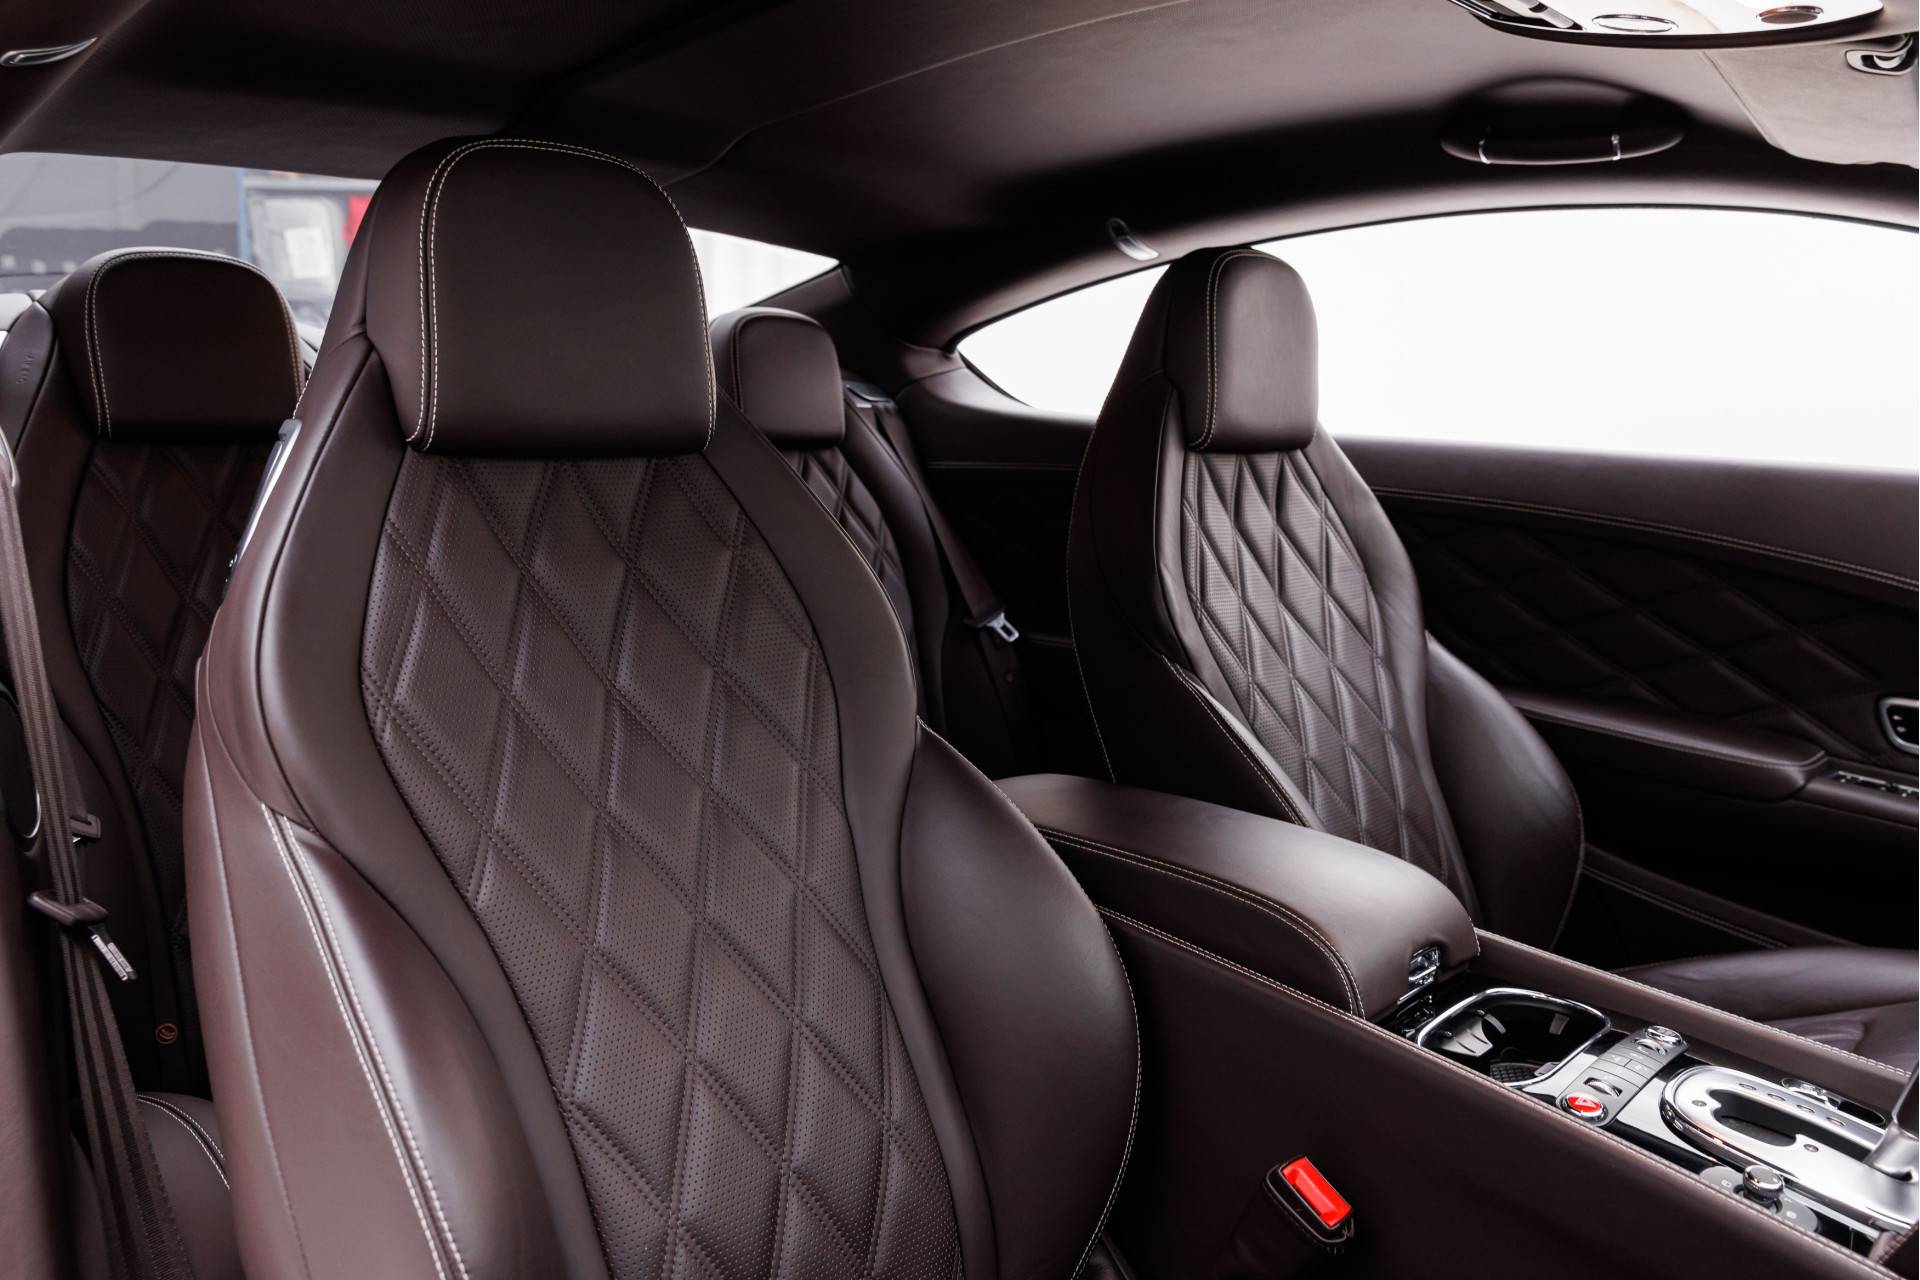 Zu Verkaufen: Bentley Continental GT V8 (2013) angeboten für 89.800 €